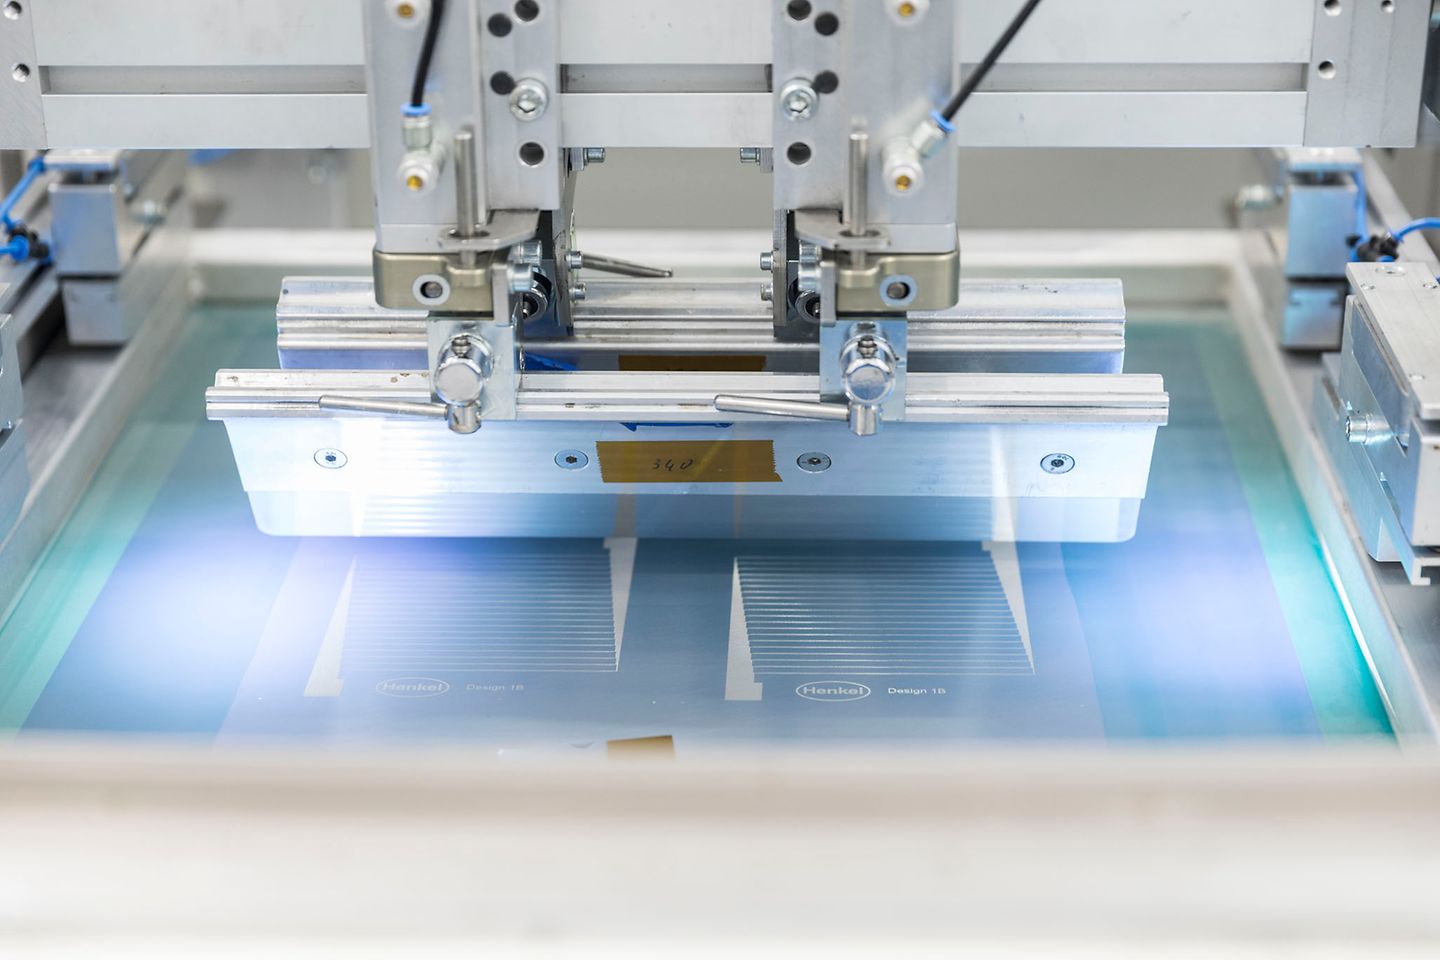 Quad Industries ist jetzt ein ‘Strategischer Partner‘ im Henkel Netzwerk für die Designentwicklung, Prototypenerstellung und die Fertigung von gedruckter Elektronik.